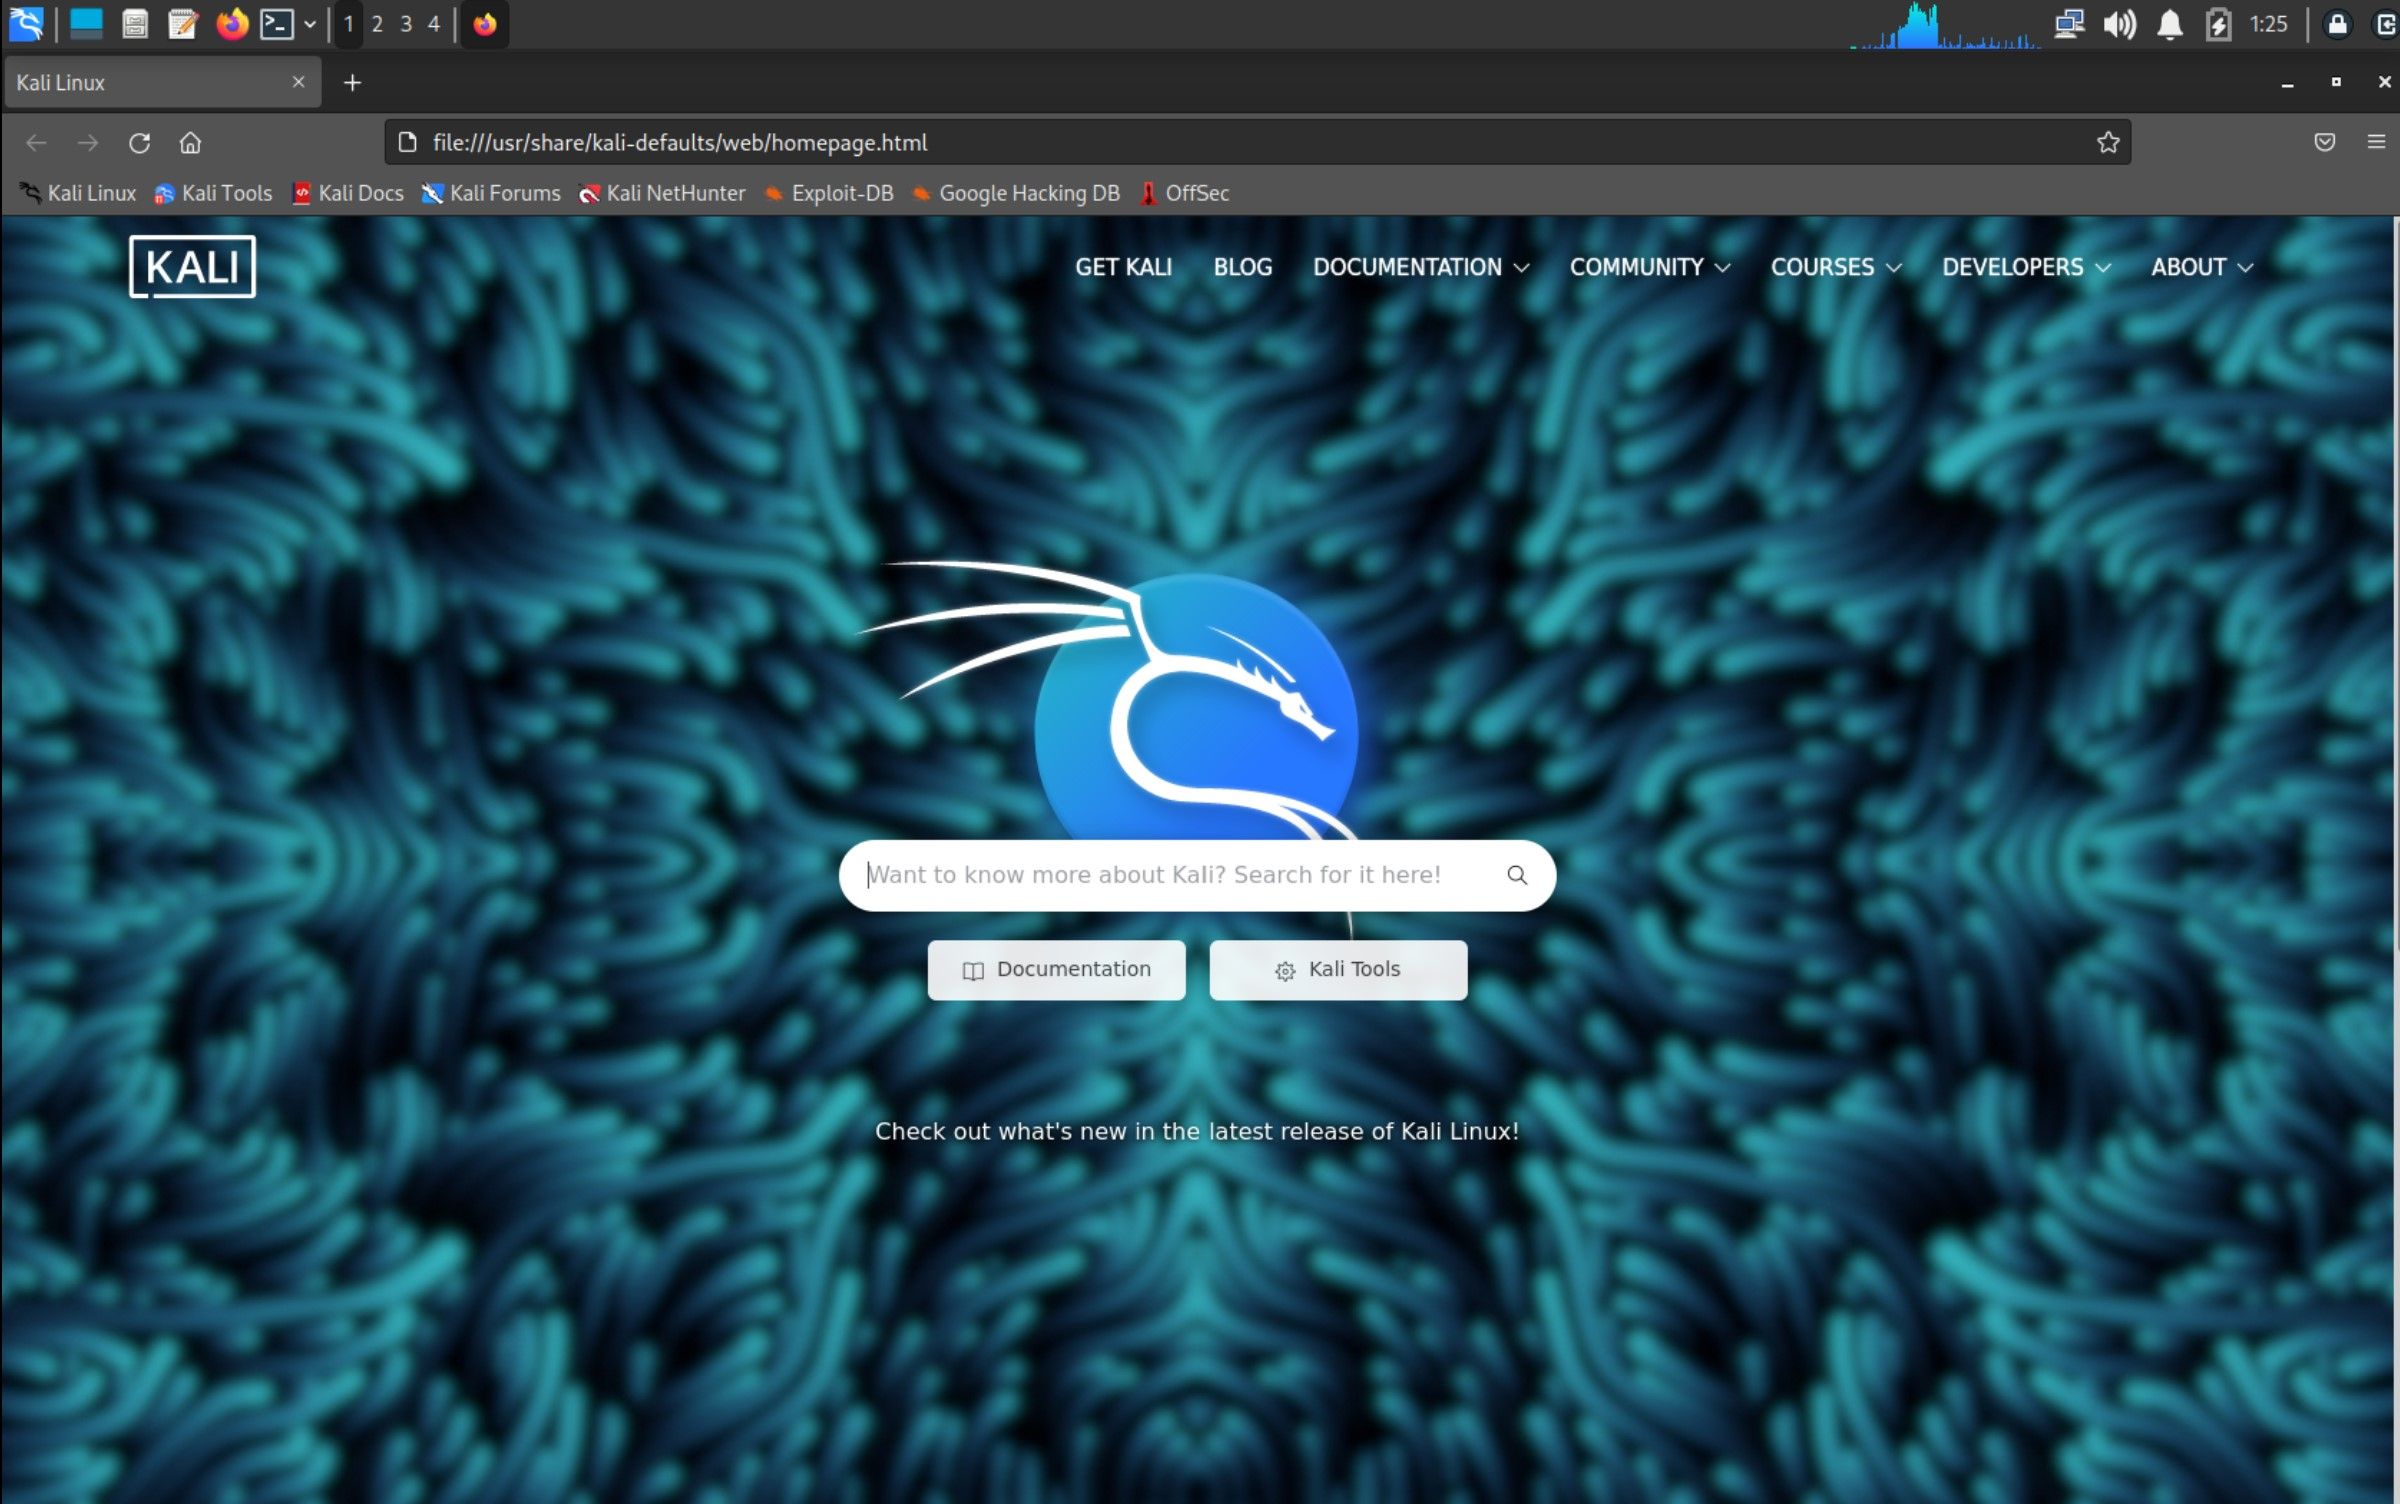 Kali browser interface on Kali desktop